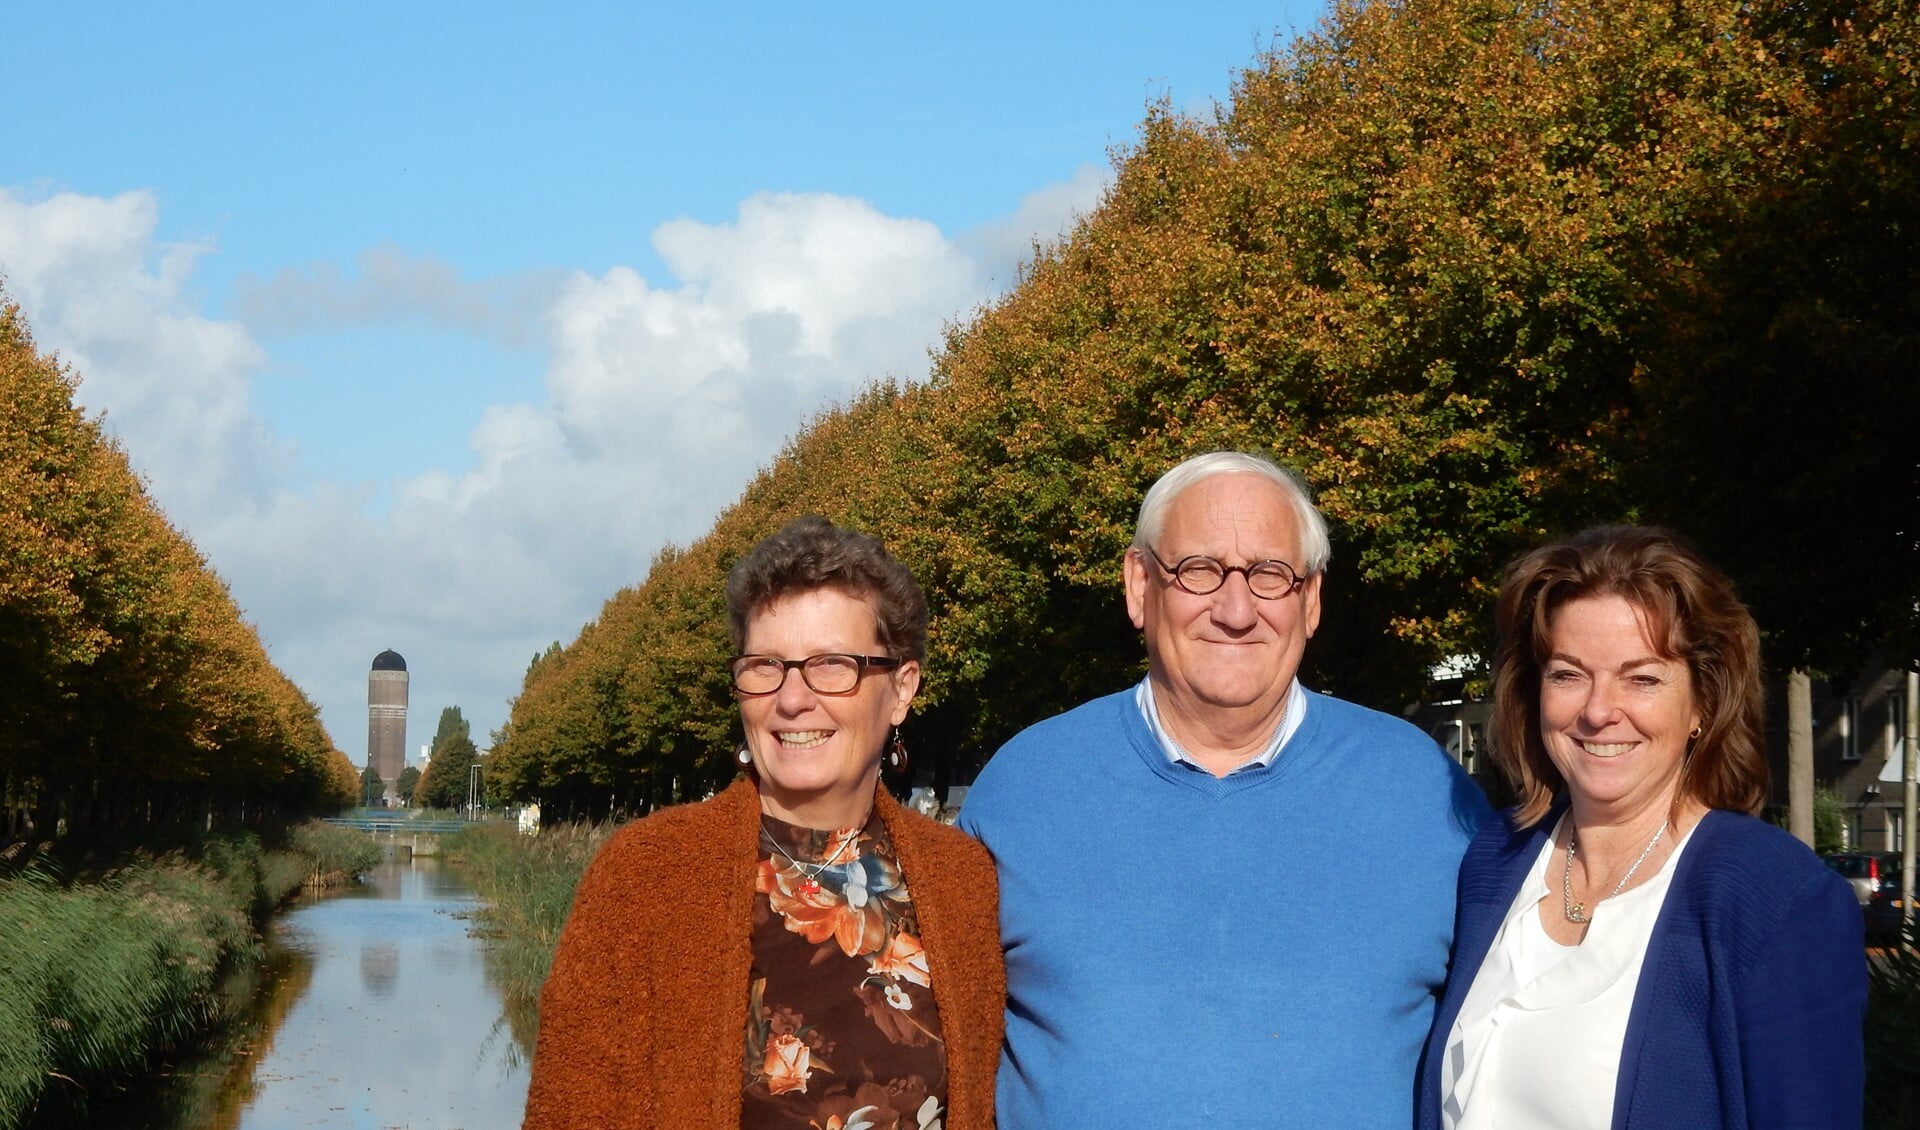 Onderschrift: Hans van der Bilt, Gerda Griffioen en Karen Paternotte kijken ernaar uit om hun Gedenkdag weer bij de watertoren te houden.